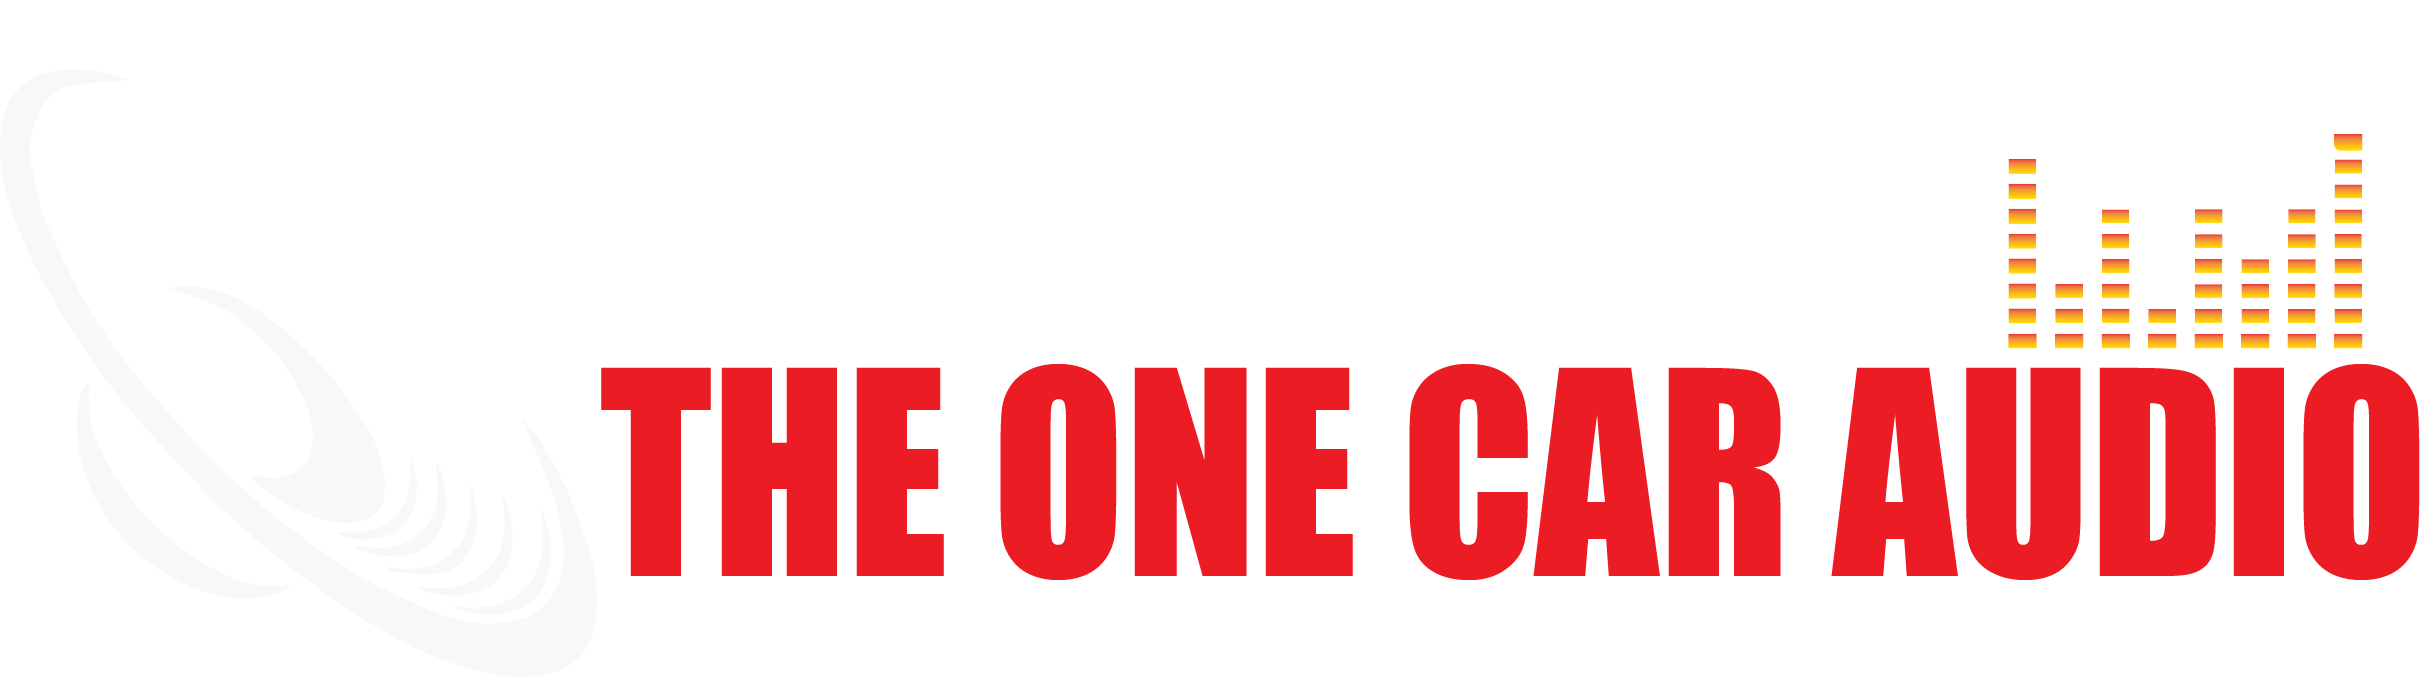 The One Car Audio – 音色天下汽車音響